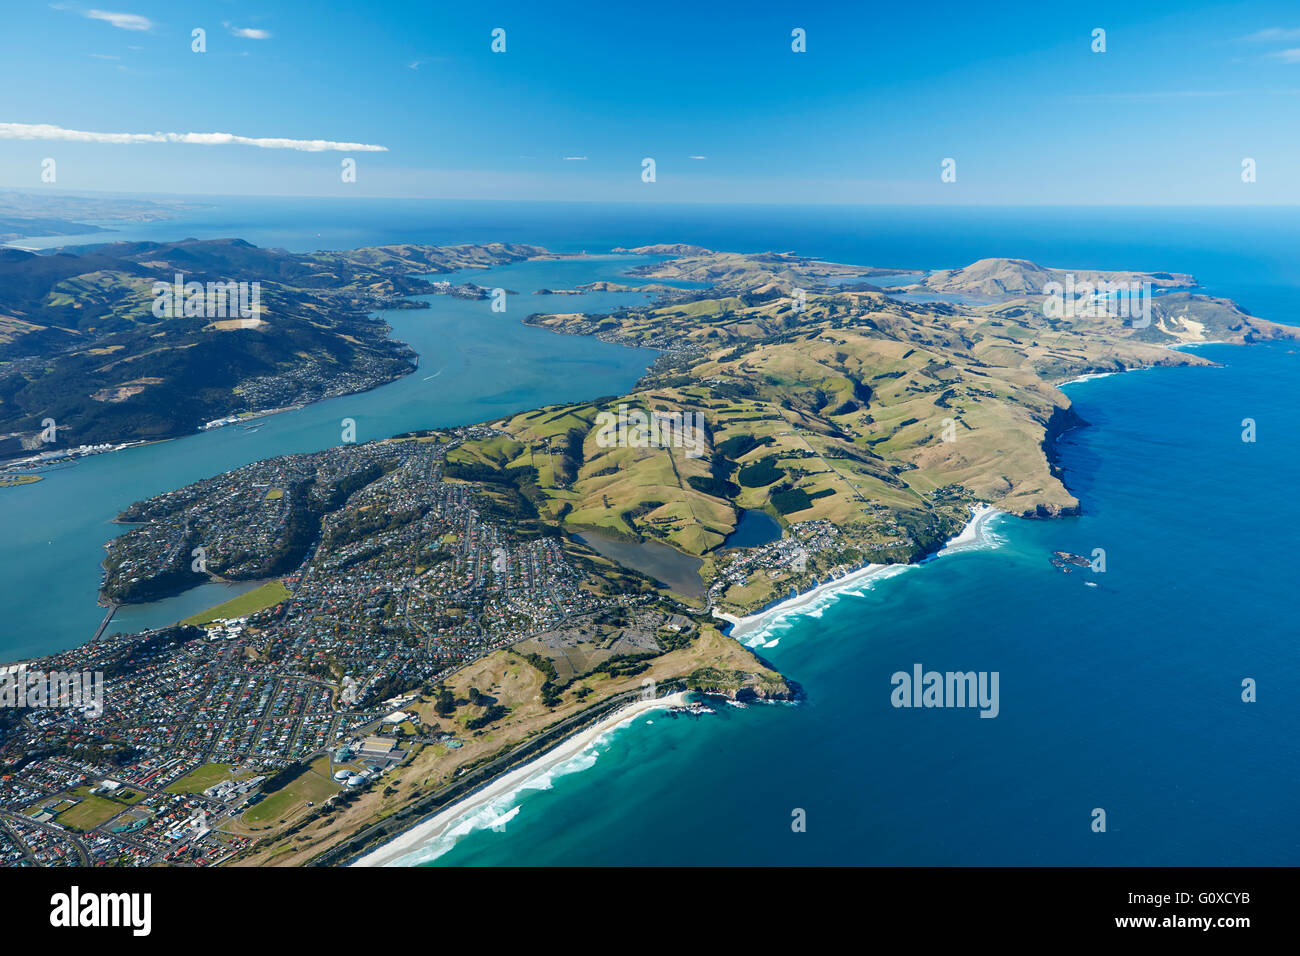 La Plage St Kilda, Otago Harbour et péninsule d'Otago, Dunedin, Otago, île du Sud, Nouvelle-Zélande - vue aérienne Banque D'Images